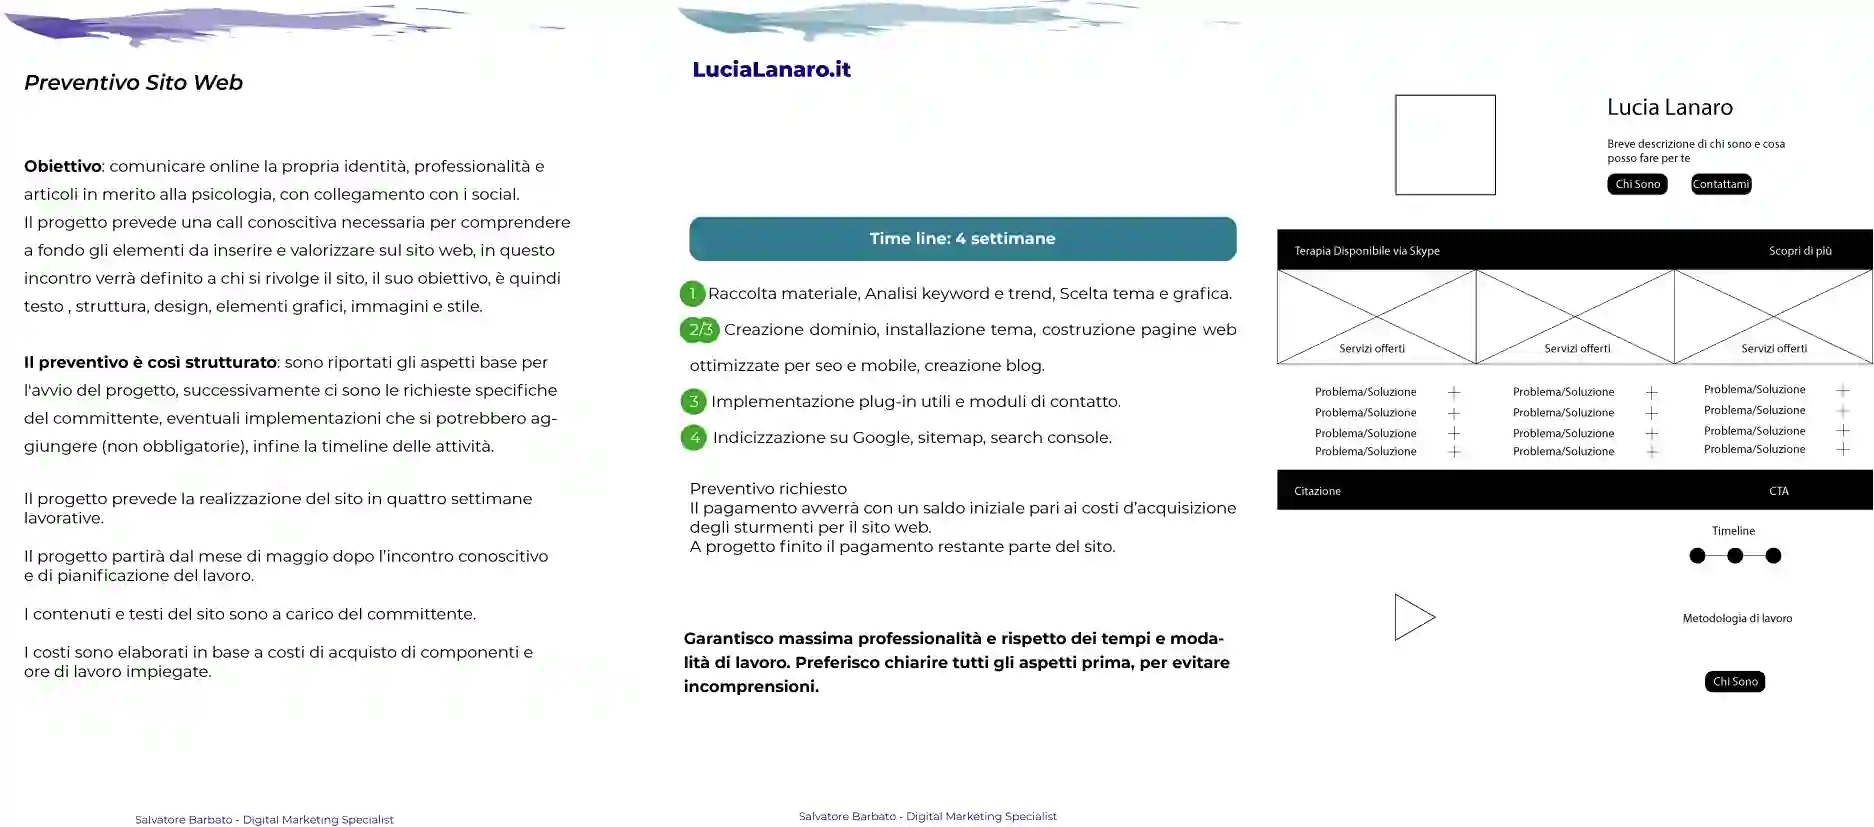 Lucia Lanaro psicologa preventivo sitoweb